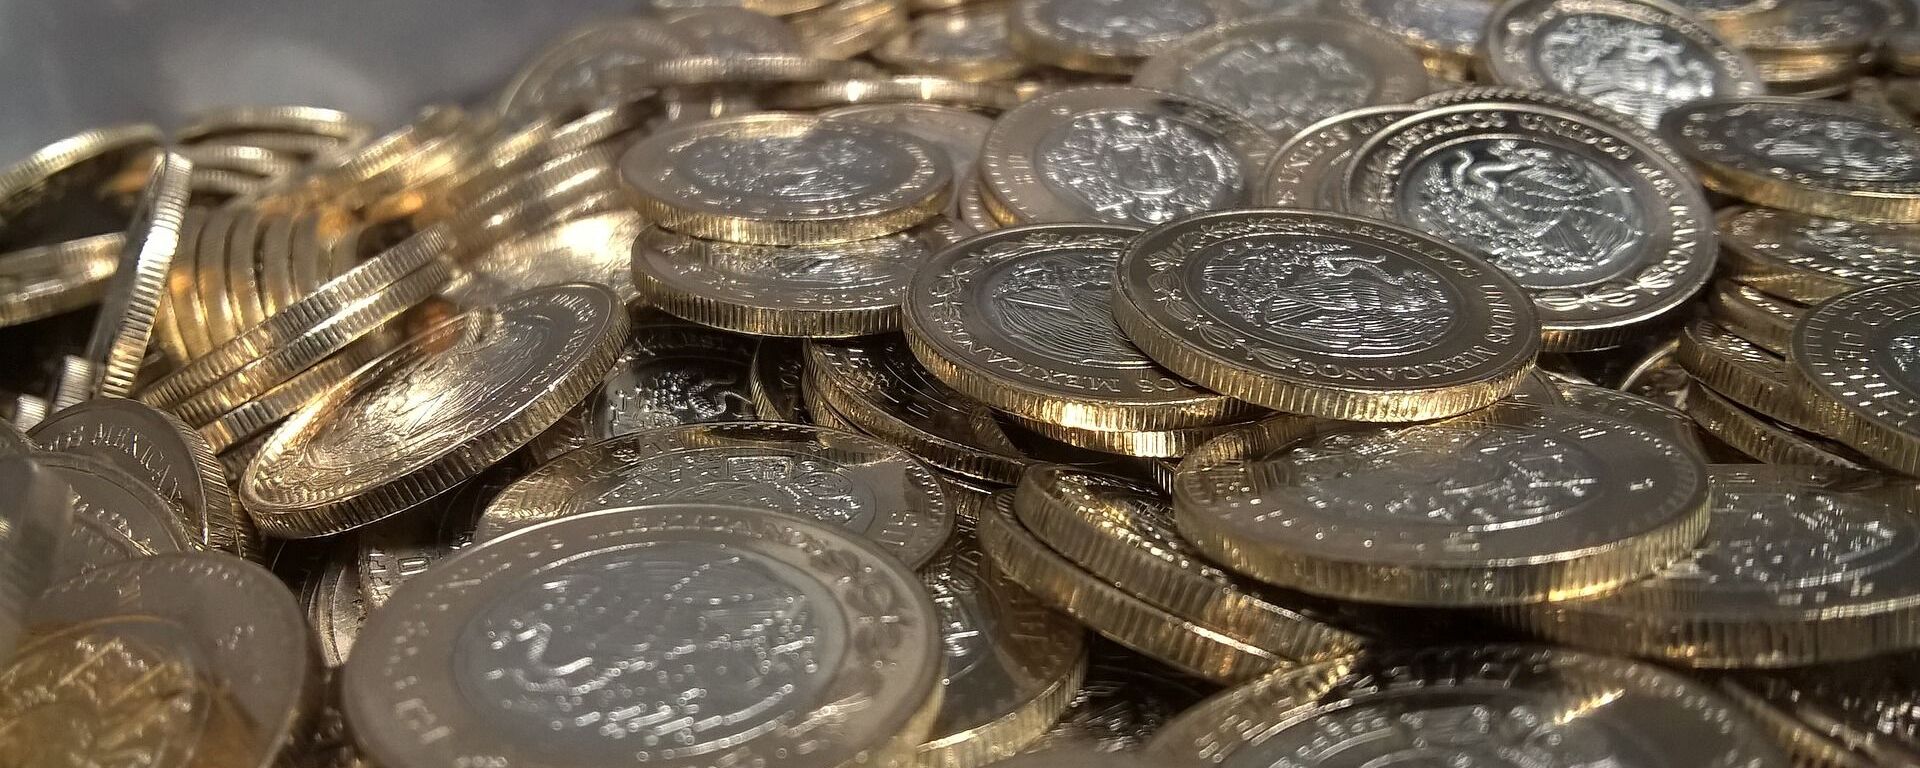 Pesos mexicanos. Monedas. Imagen referencial - Sputnik Mundo, 1920, 01.12.2021